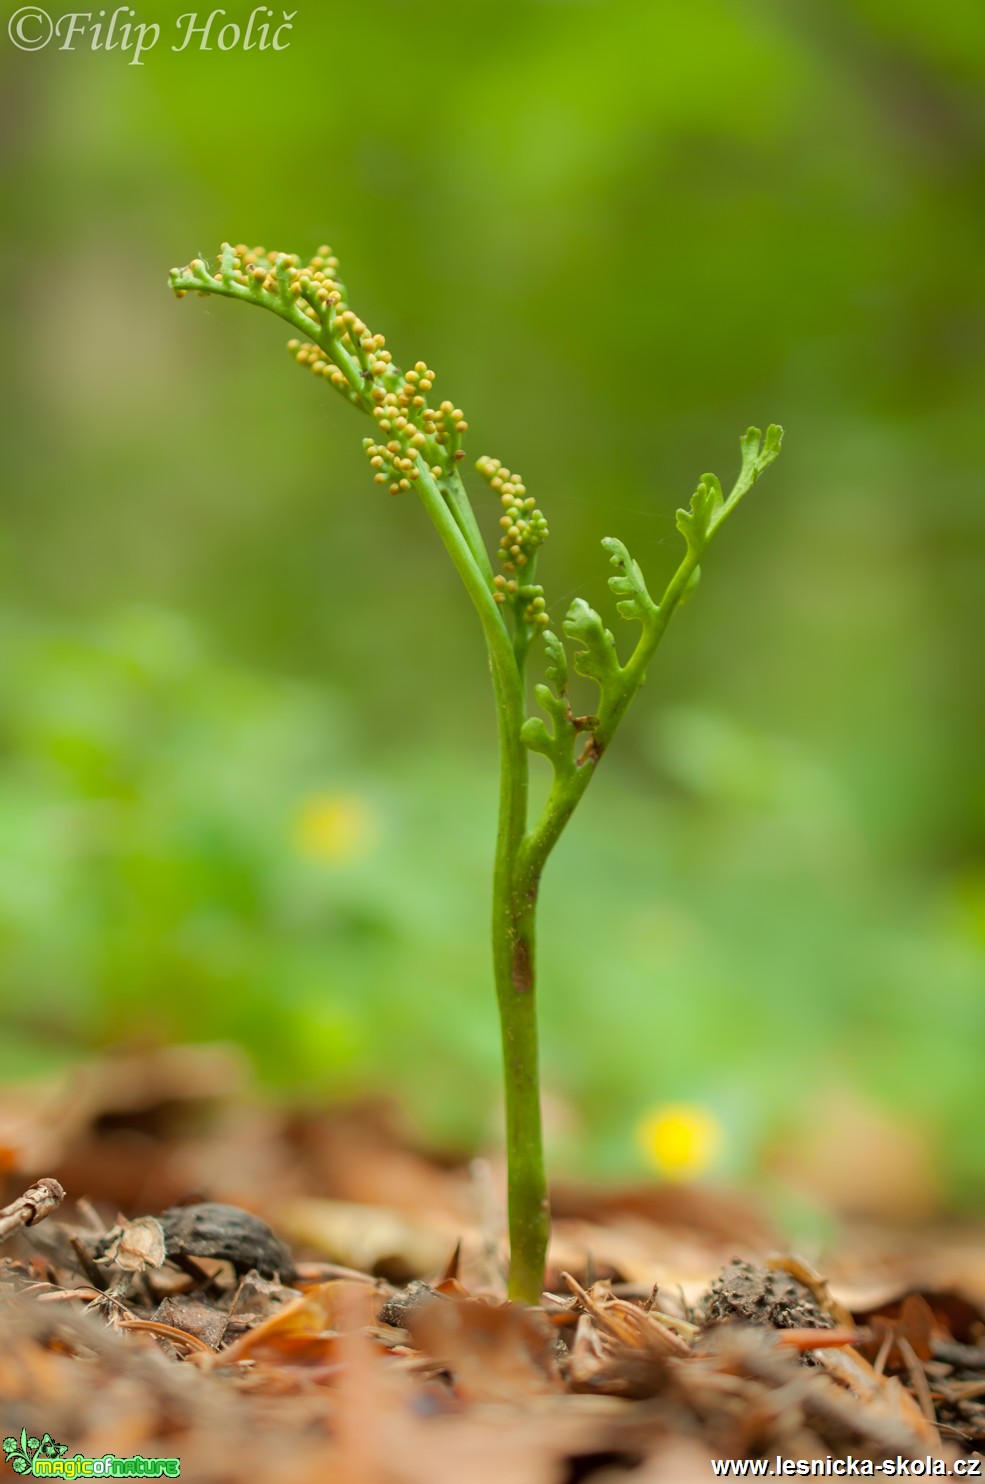 Vratička heřmánkolistá - Botrychium matricariifolium - Foto Filip Holič